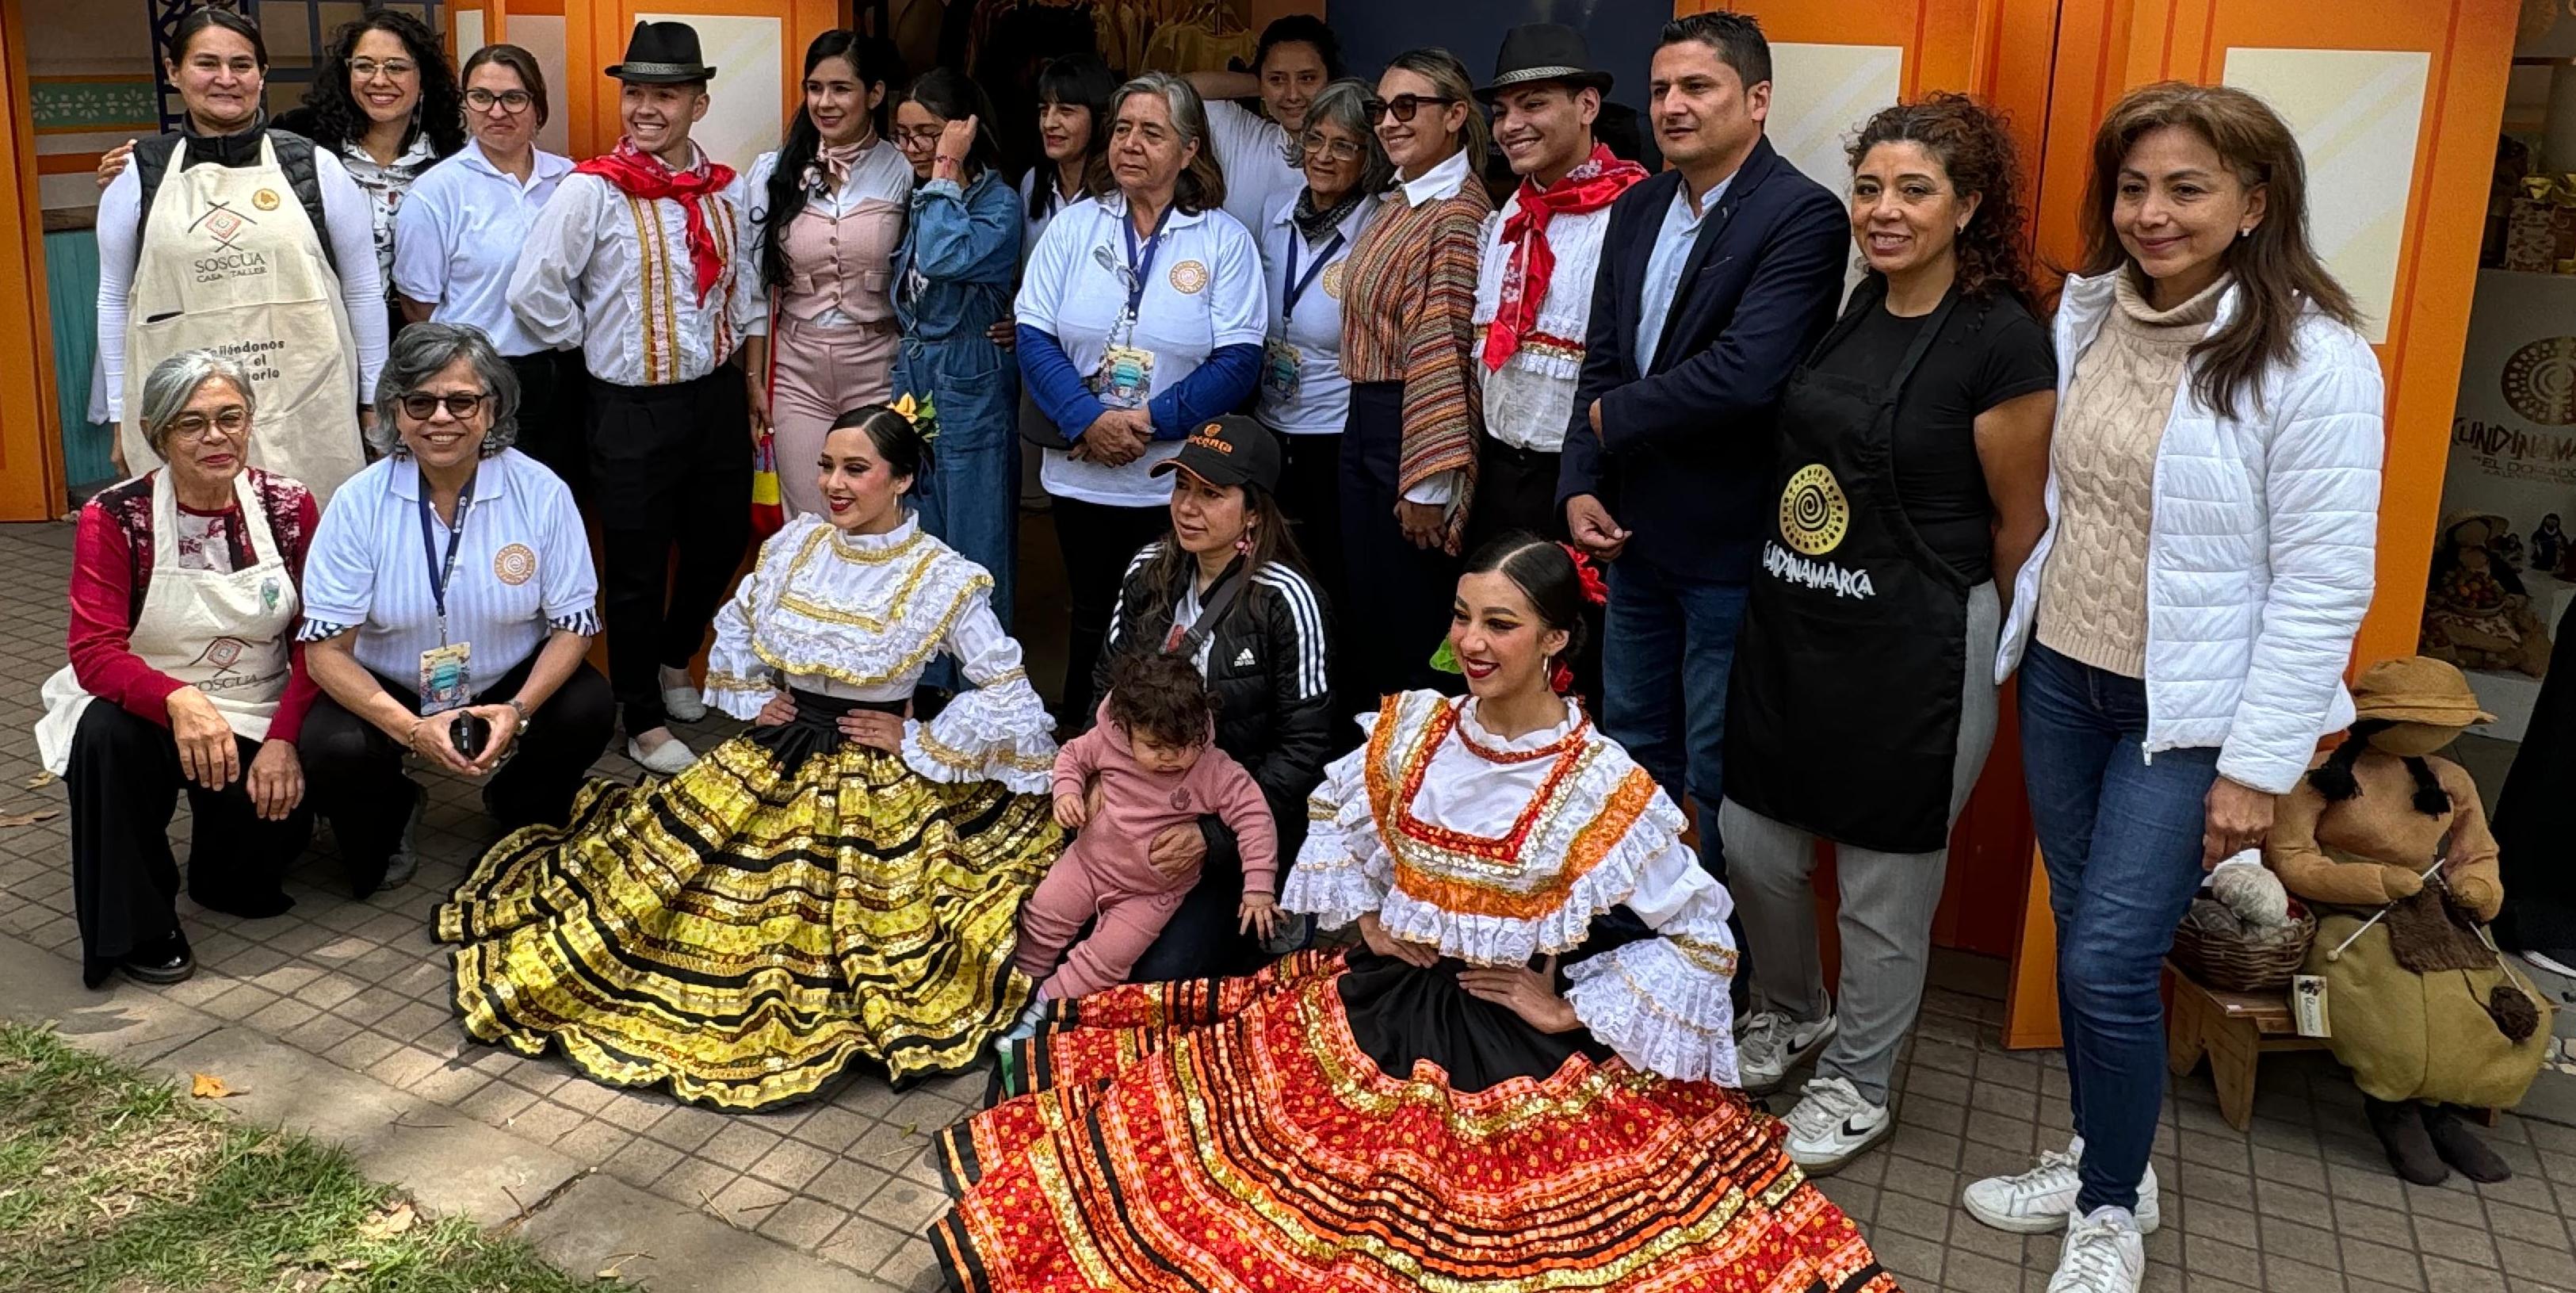 ‘Colombia son las regiones’, un escenario para promocionar lo mejor de Cundinamarca

